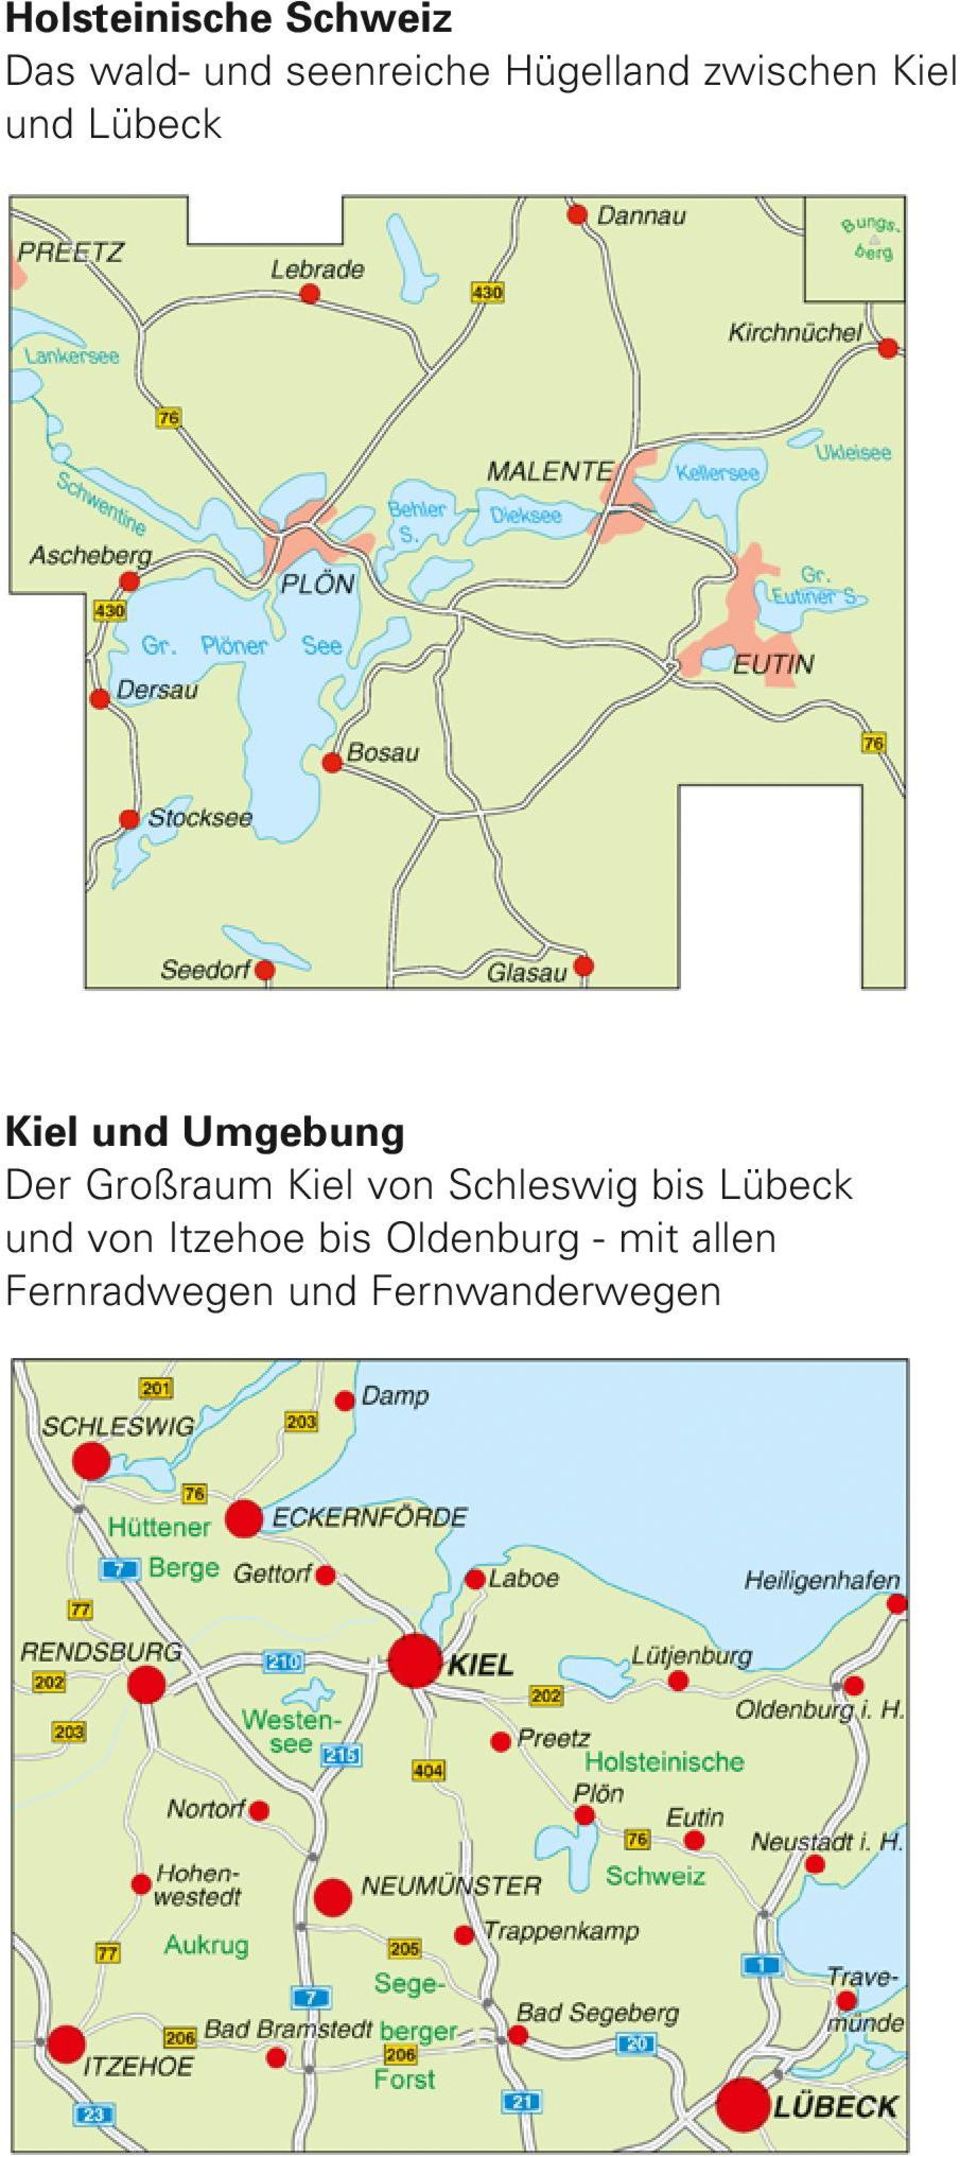 Der Großraum Kiel von Schleswig bis Lübeck und von